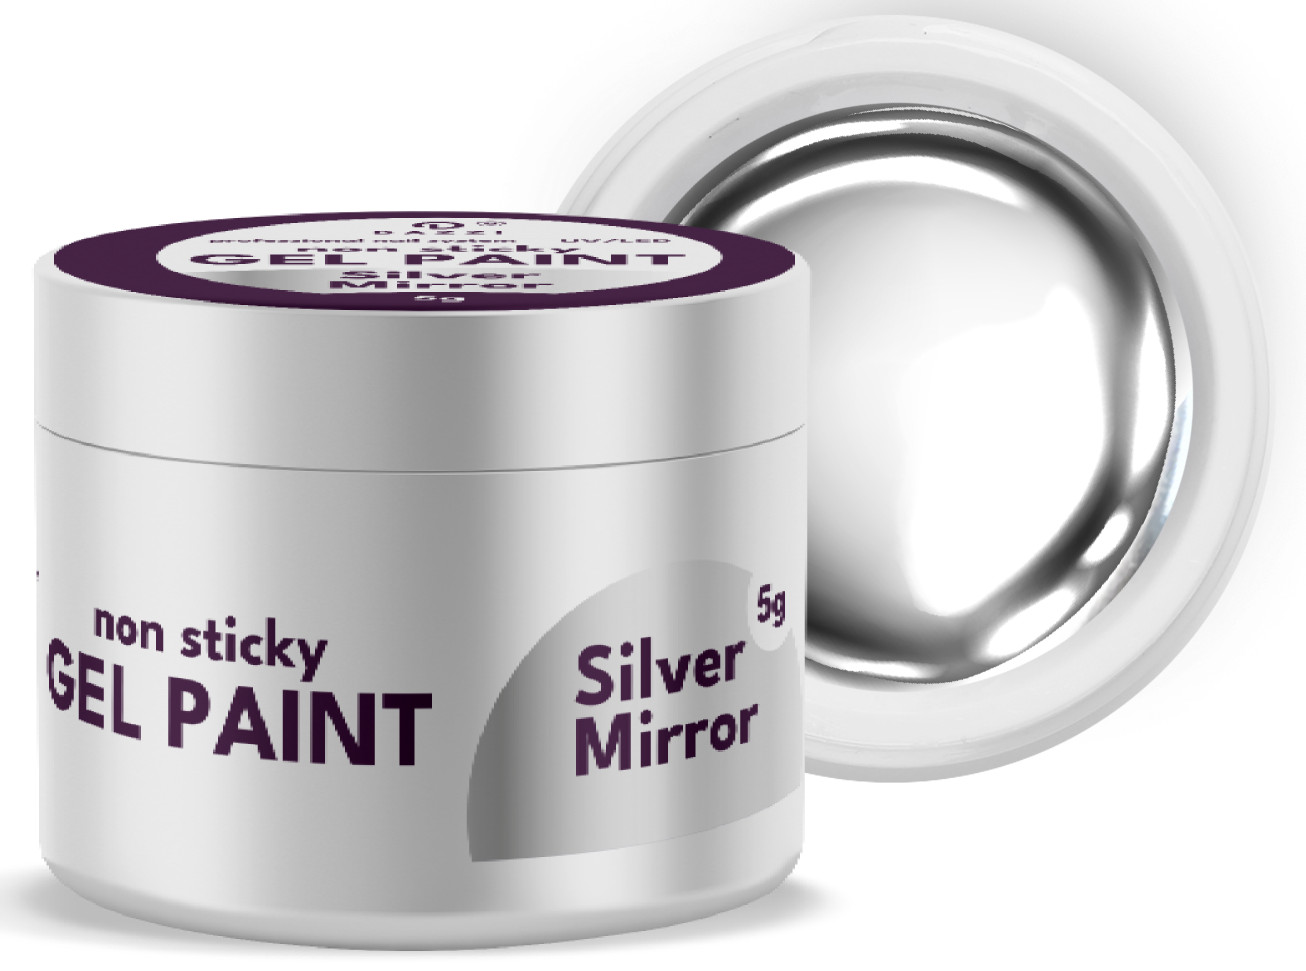 Gel Paint "Silver Mirror", 5 gr